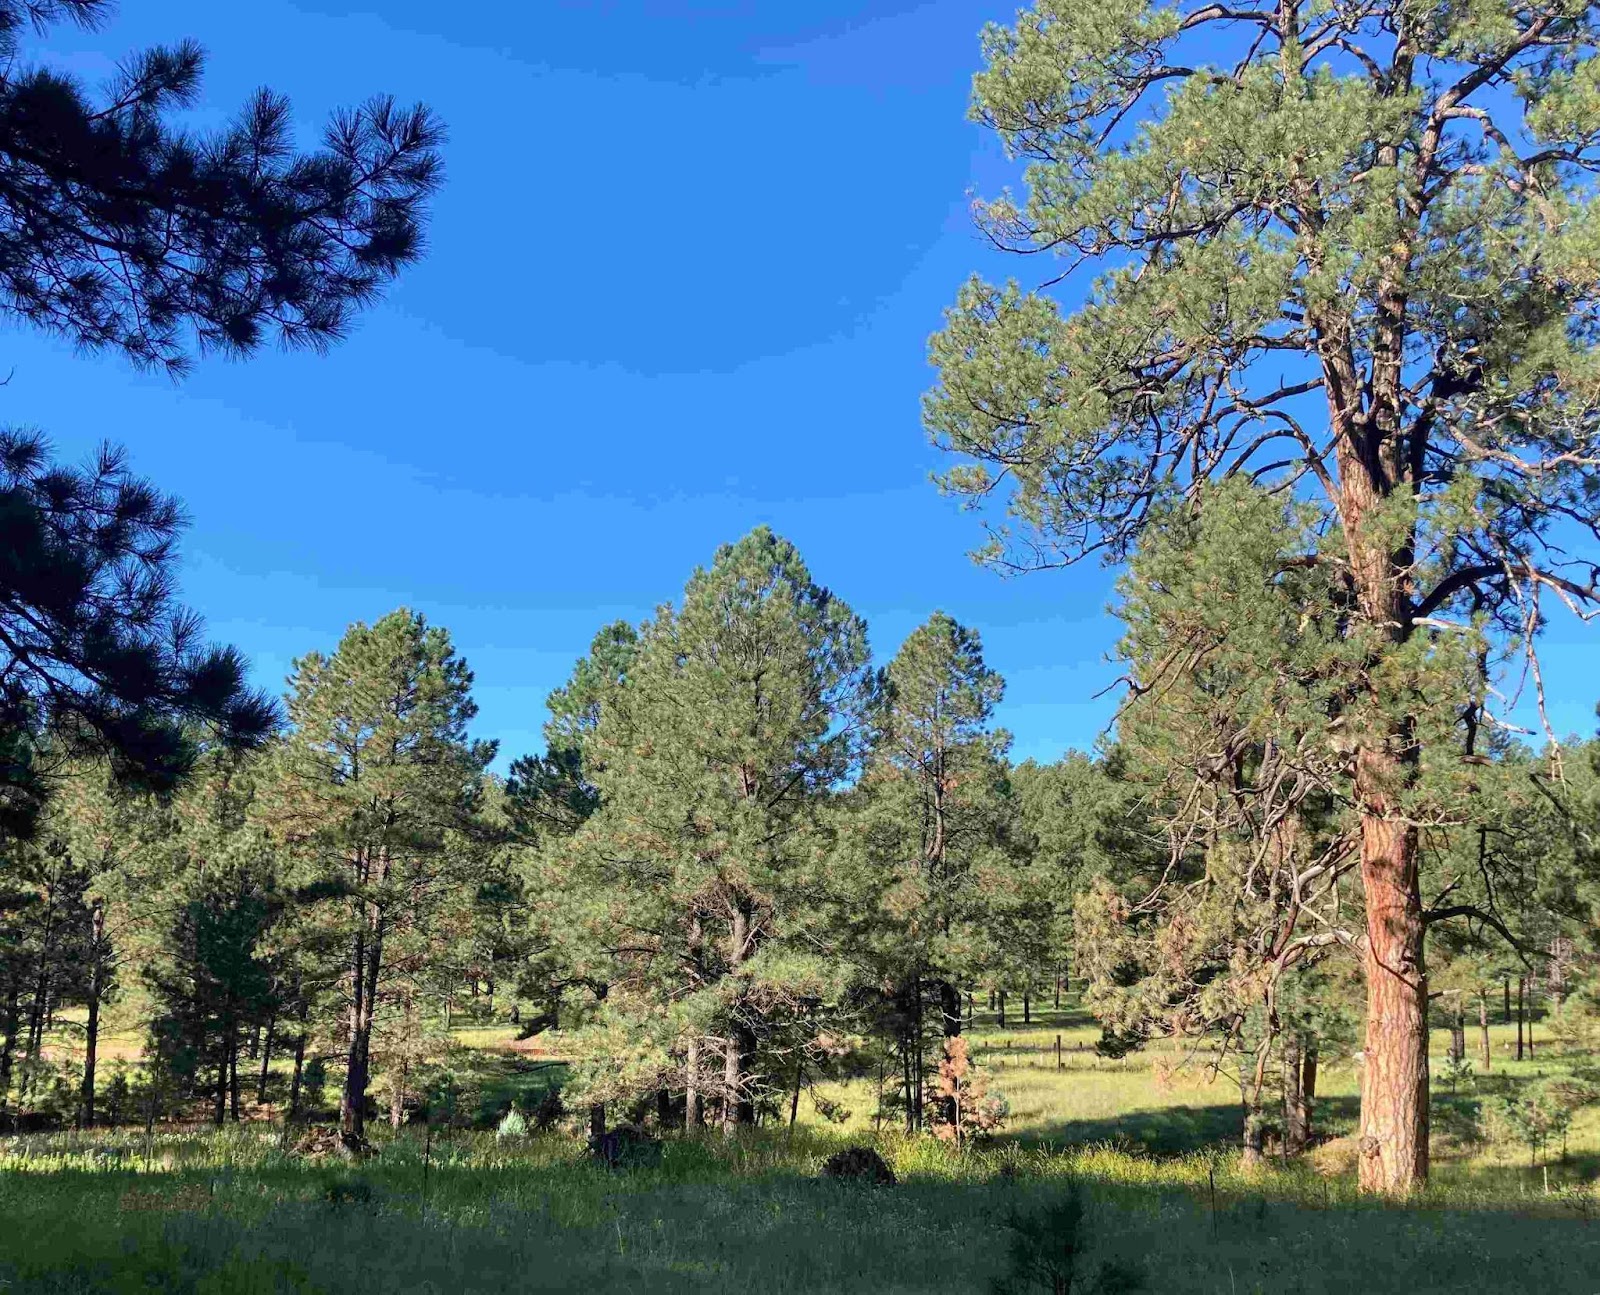 Ein Foto eines offenen, grasbewachsenen Kiefernwaldes, der sich untereinem strahlend blauen Himmel in die Ferne erstreckt. Die ganze Szene istschön, grün und lebendig. Die größten Kiefern haben eine blasse,orangefarbene Rinde, während die kleineren eine schwarze Rinde haben, einMerkmal der Ponderosa-Kiefern, die bei Reife ihre Farbeändern.